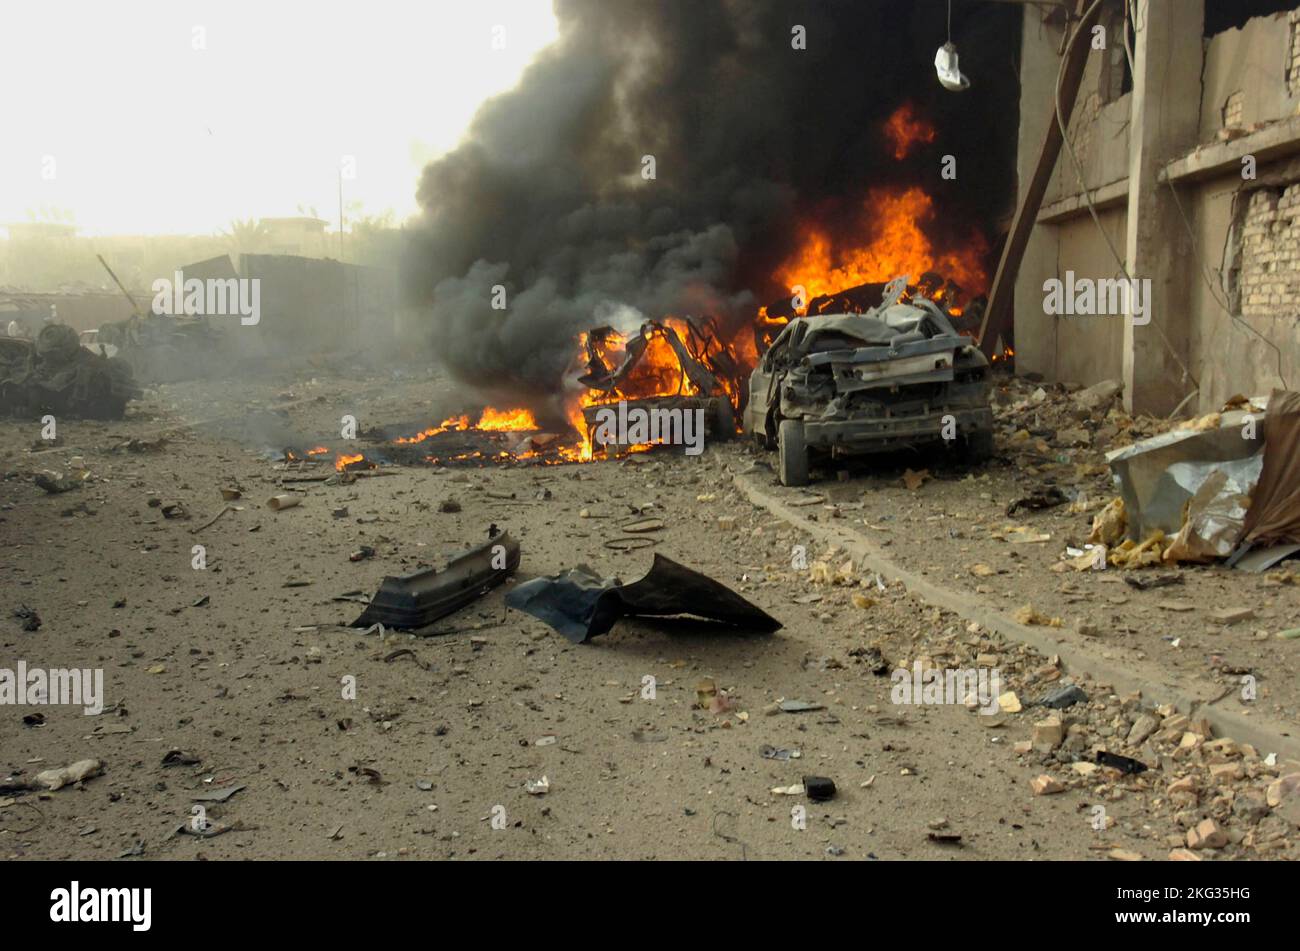 BAGHDAD, IRAQ - 27 agosto 2006 - Un 'veicolo nato improvvisato dispositivo esplosivo' o auto bomba dopo l'esplosione su una strada al di fuori della carta da giornale al Sabah Foto Stock